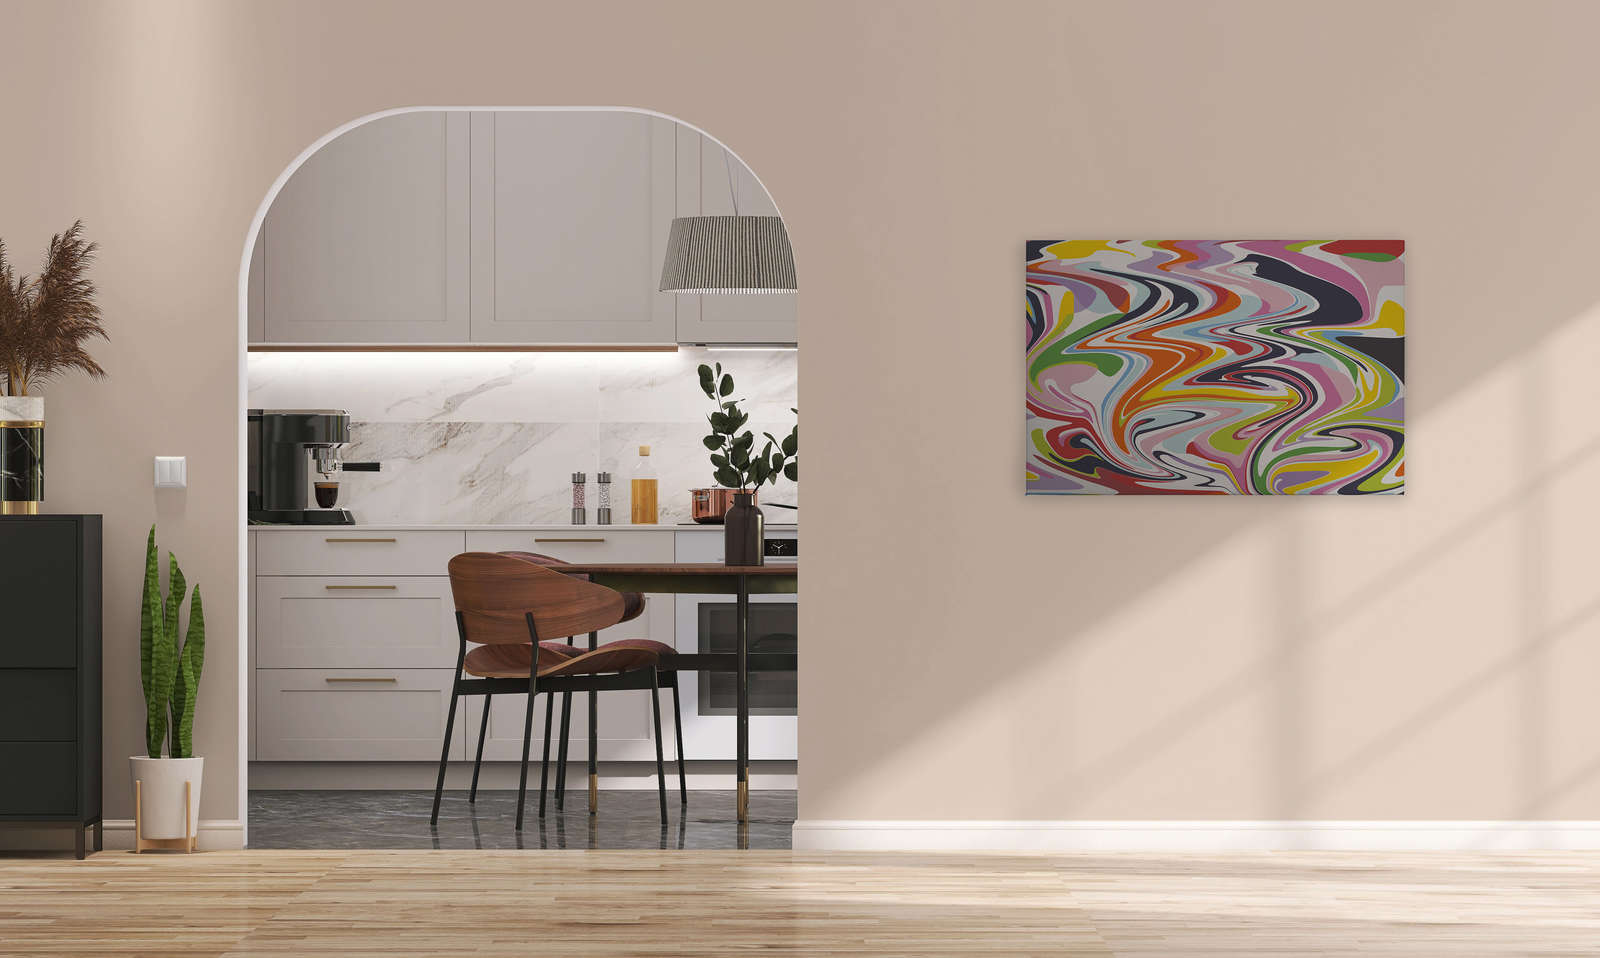             Cuadro abstracto con mezcla de colores - 0,90 m x 0,60 m
        